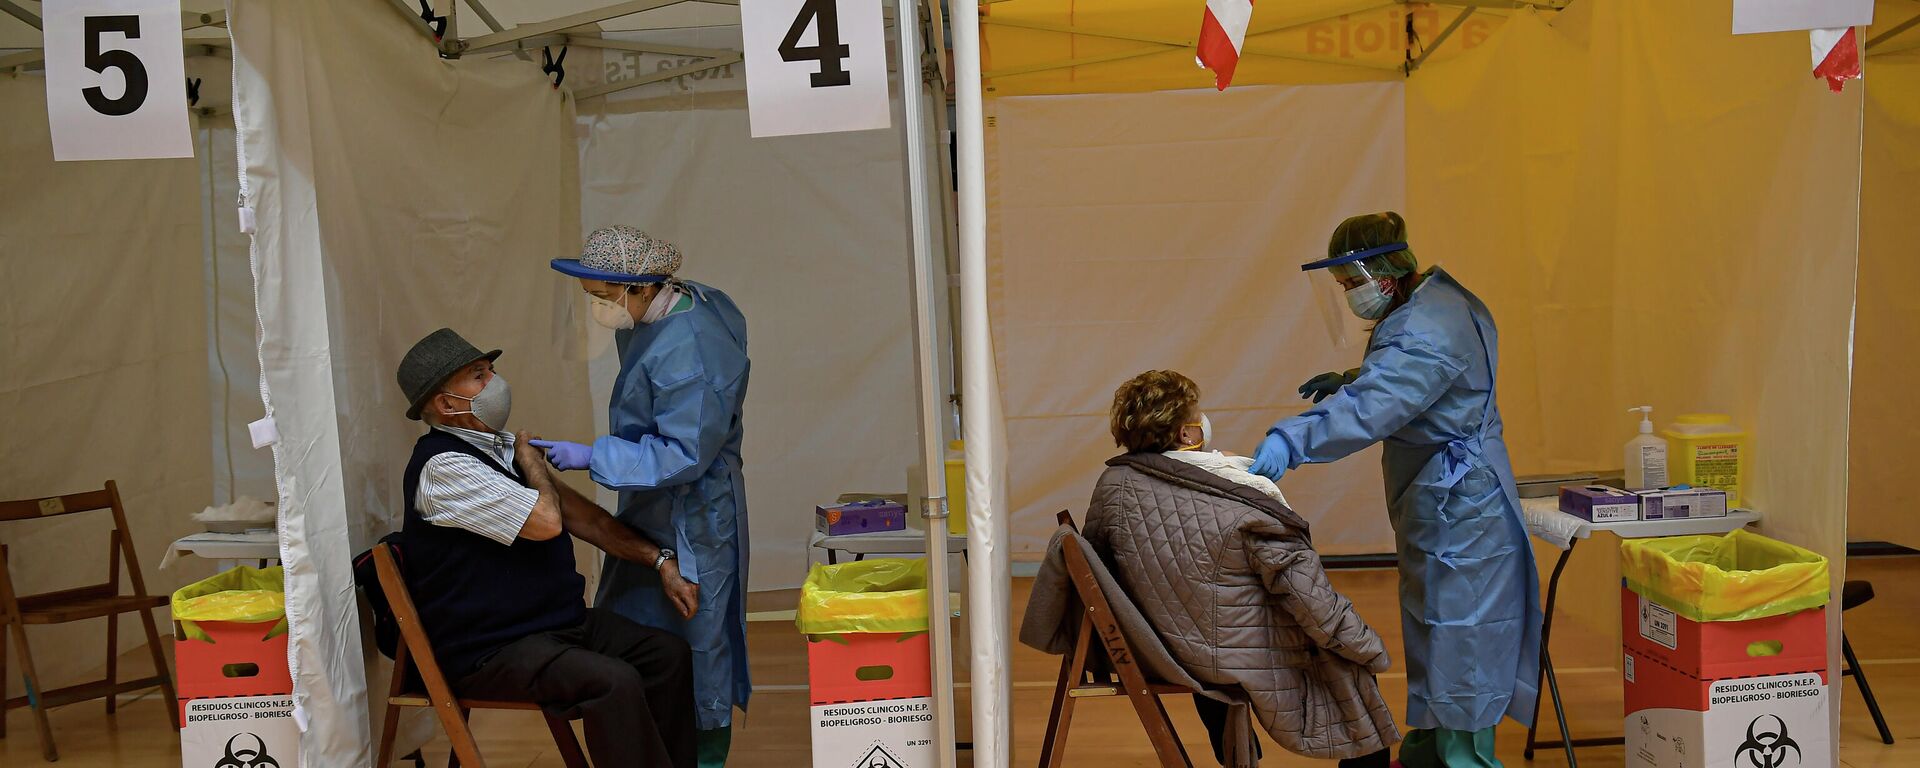 Dos ancianos reciben la vacuna Pfizer contra el coronavirus en el norte de España. 4 de marzo de 2021. - Sputnik Mundo, 1920, 04.03.2021